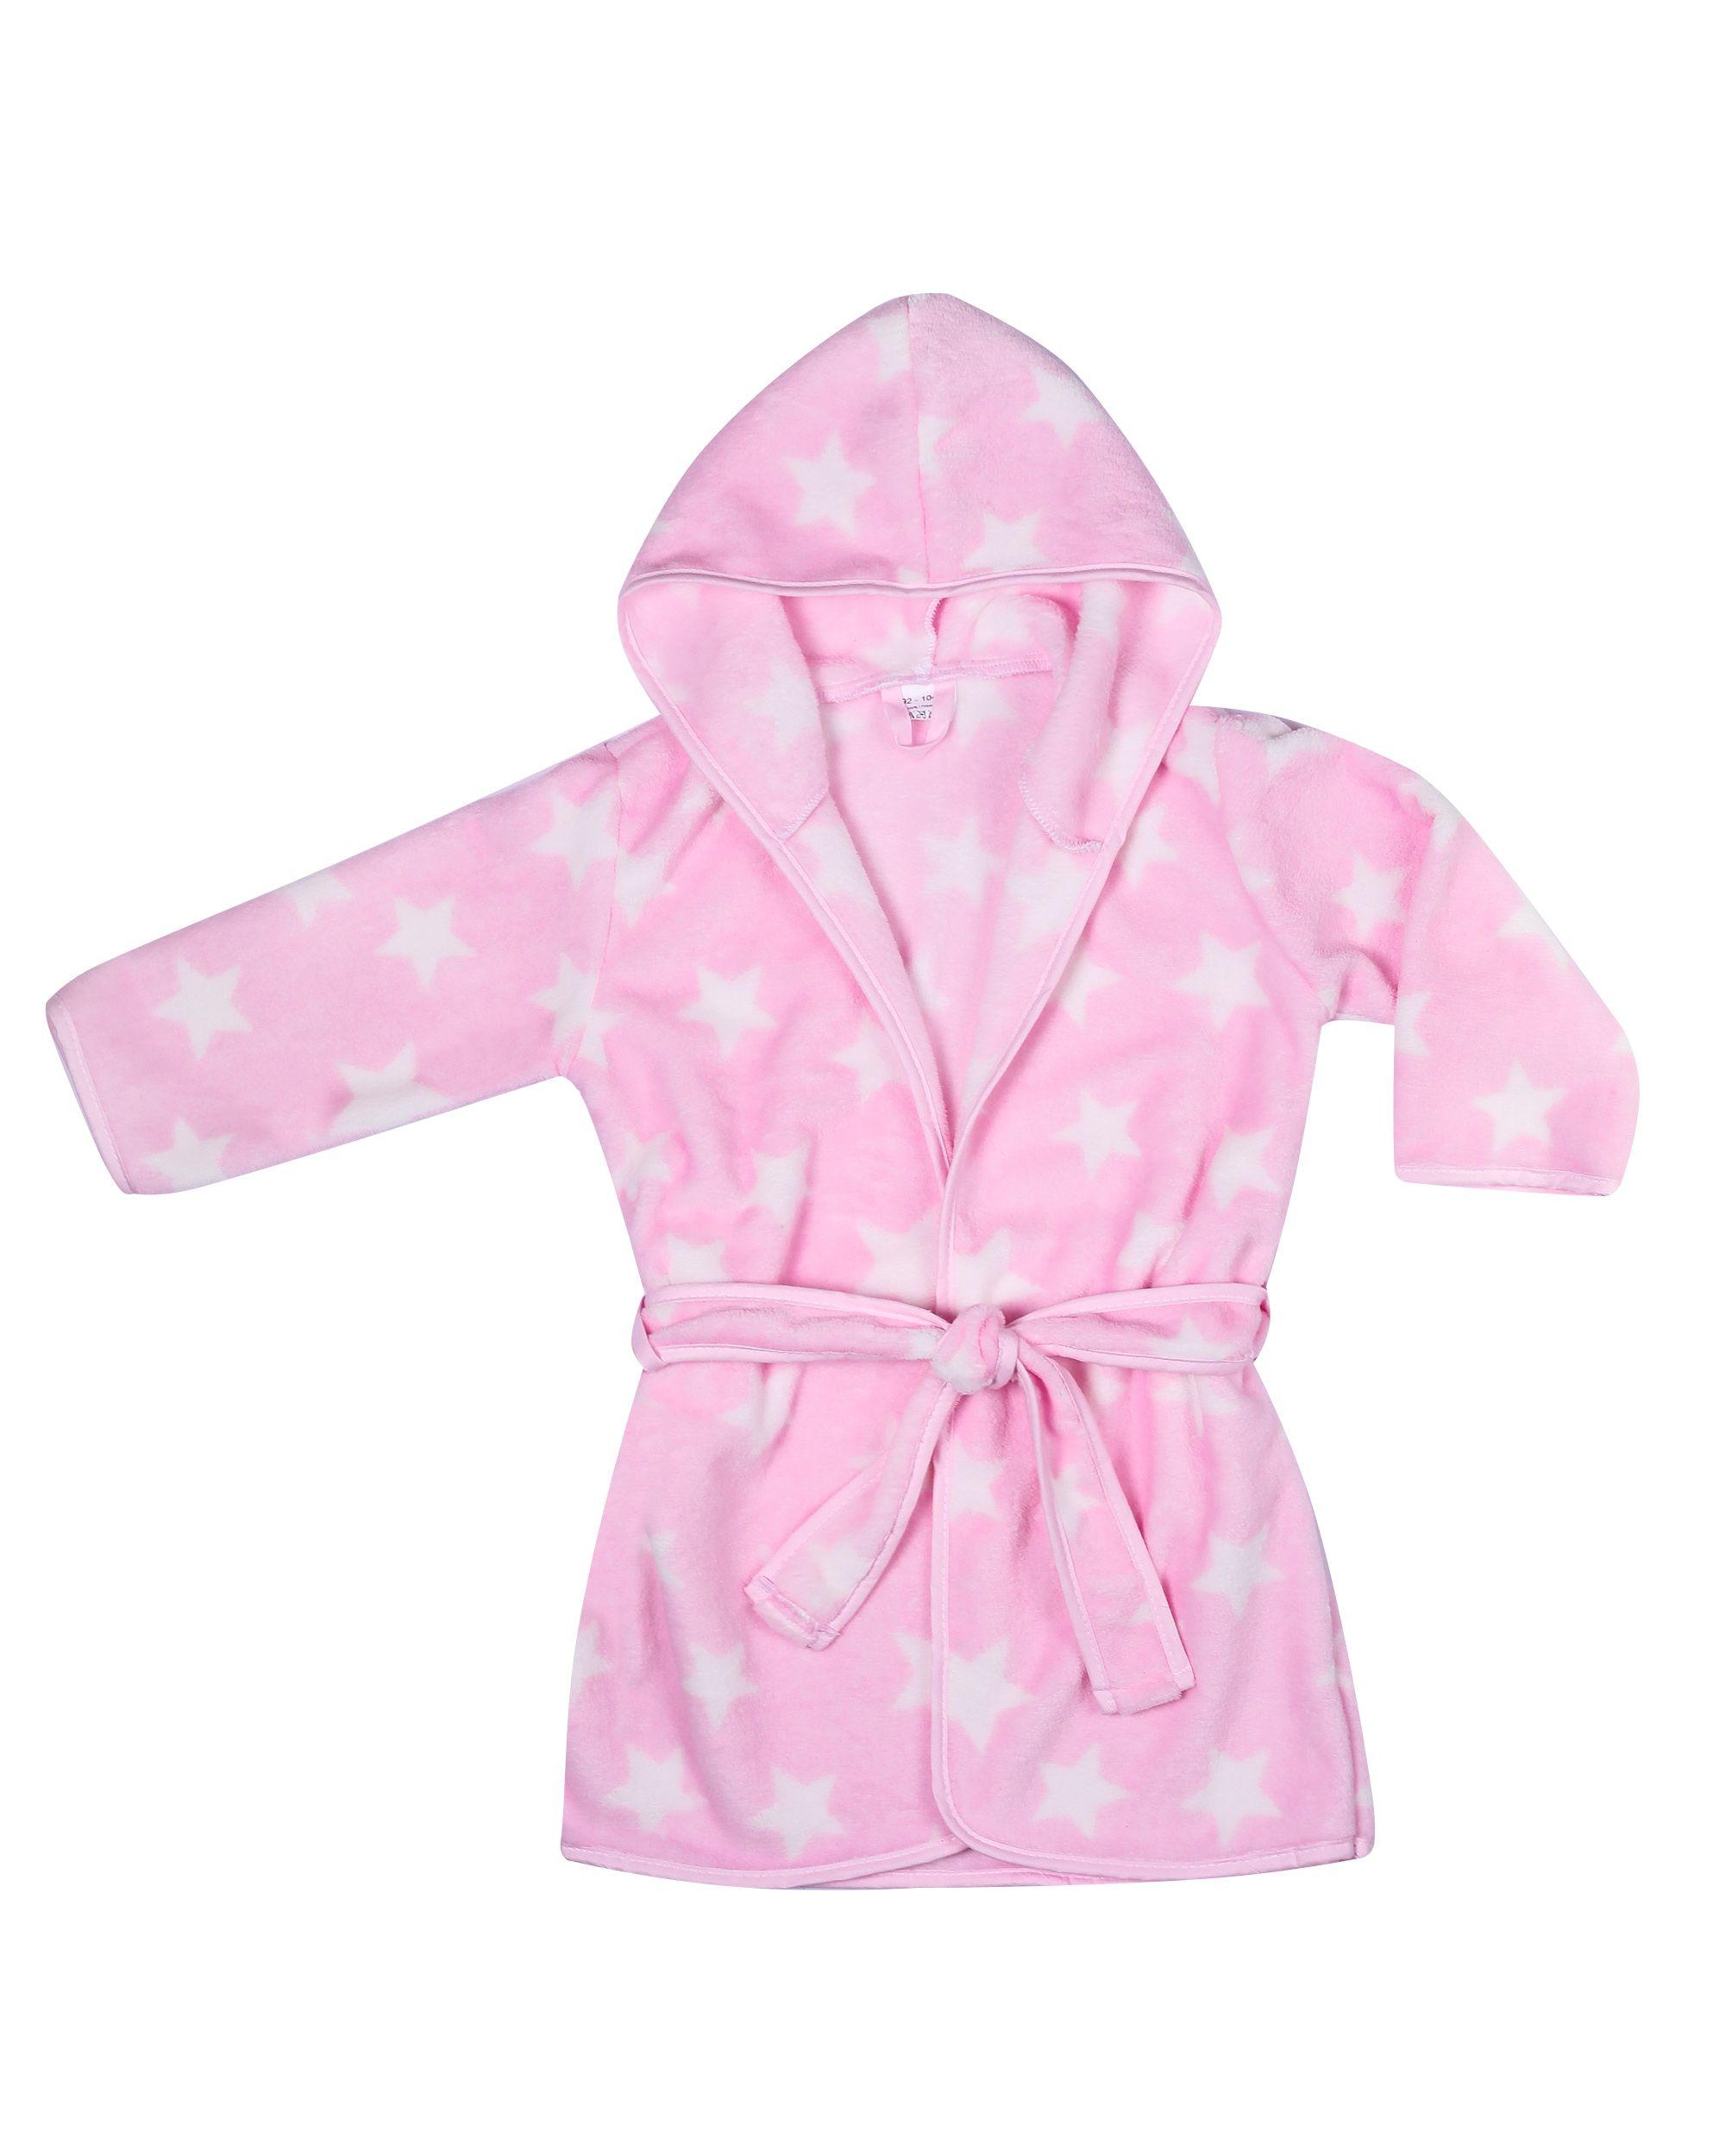 Children's bathrobe size 92/98/104 - pink in stars